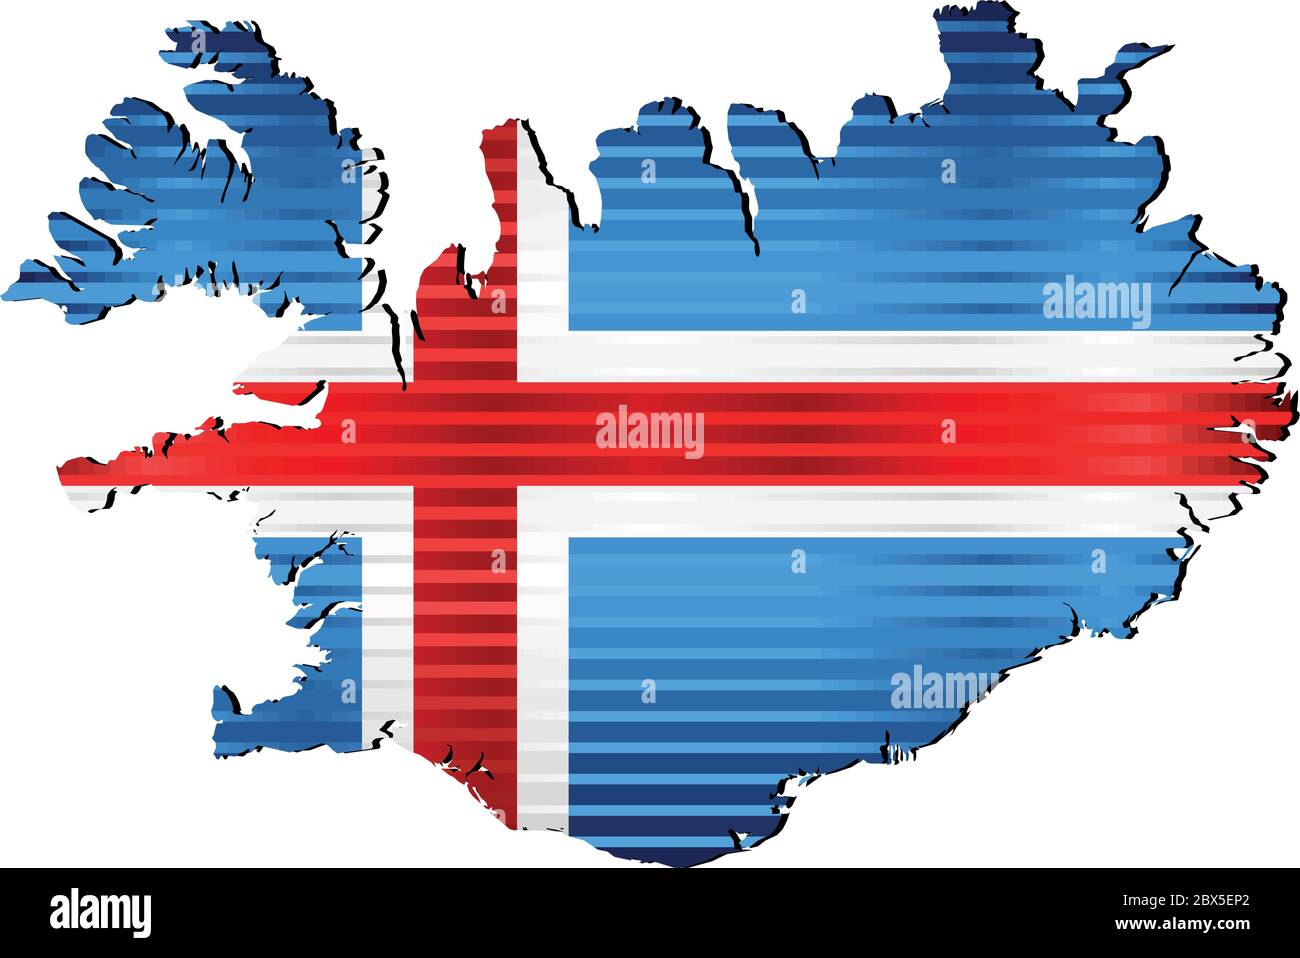 Glänzende Landkarte von Island - Illustration, dreidimensionale Landkarte von Island Stock Vektor